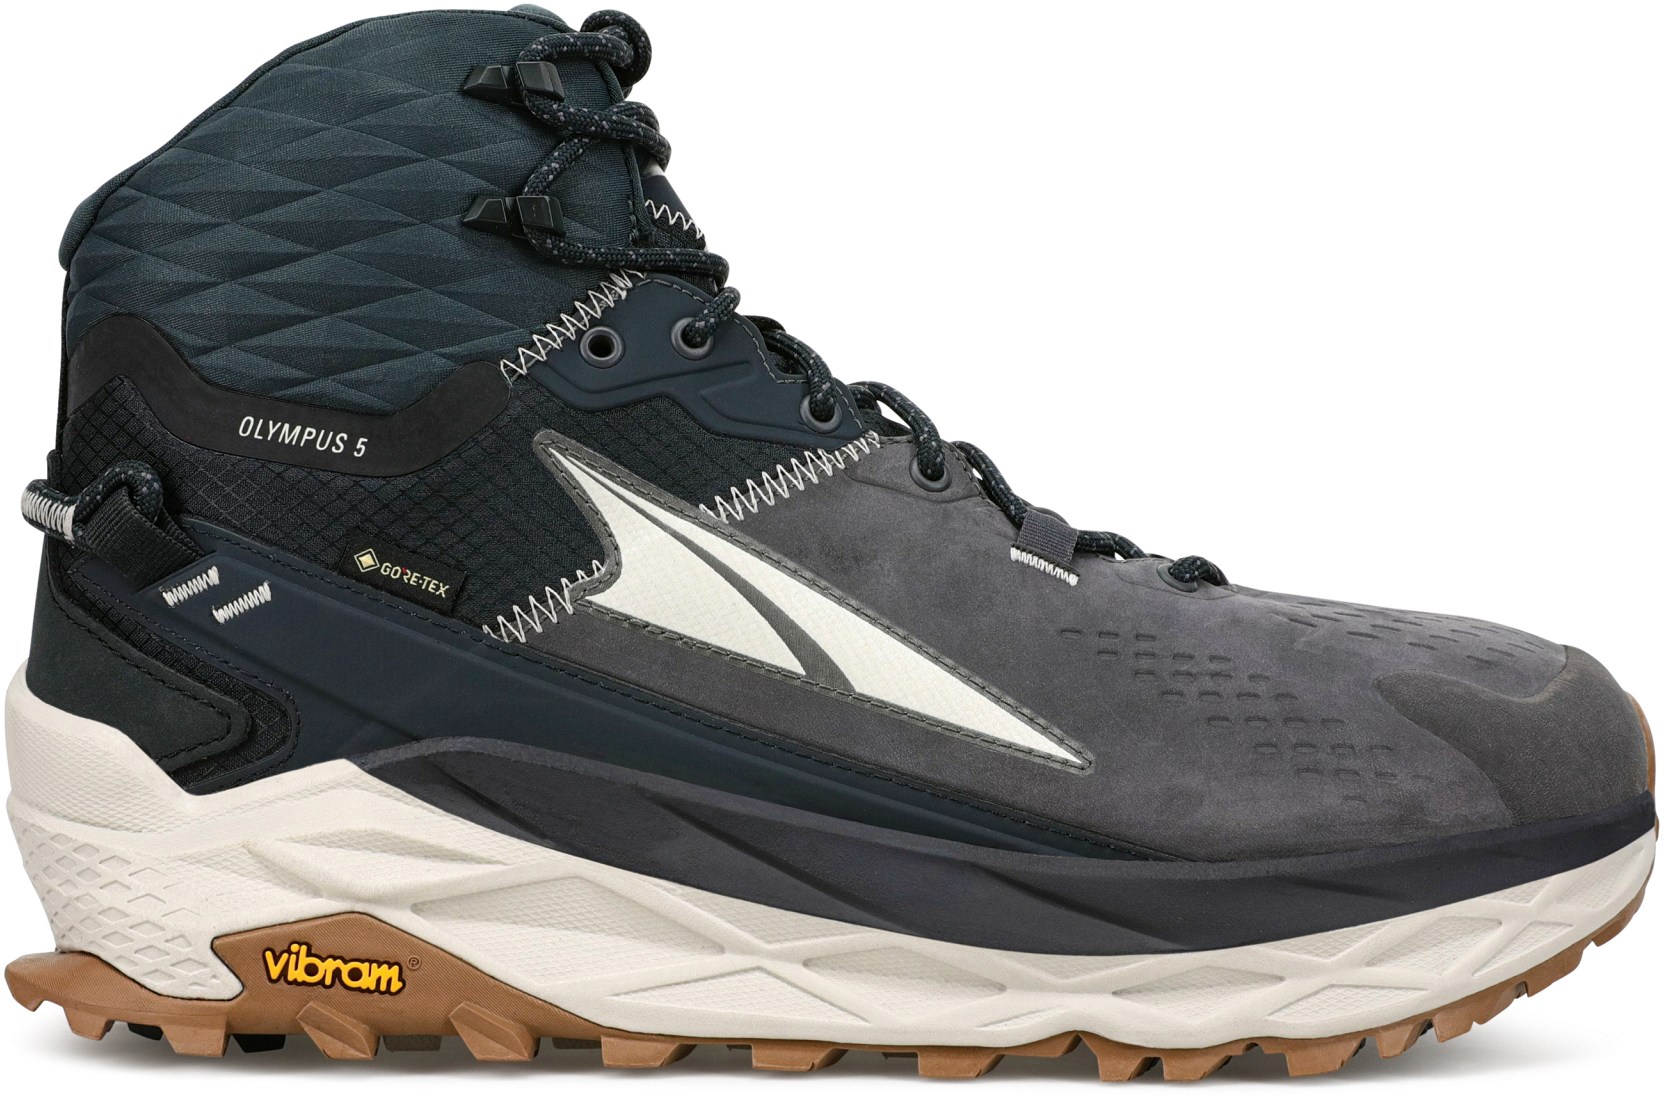 Походные ботинки Olympus 5 Hike Mid GTX — мужские Altra, черный